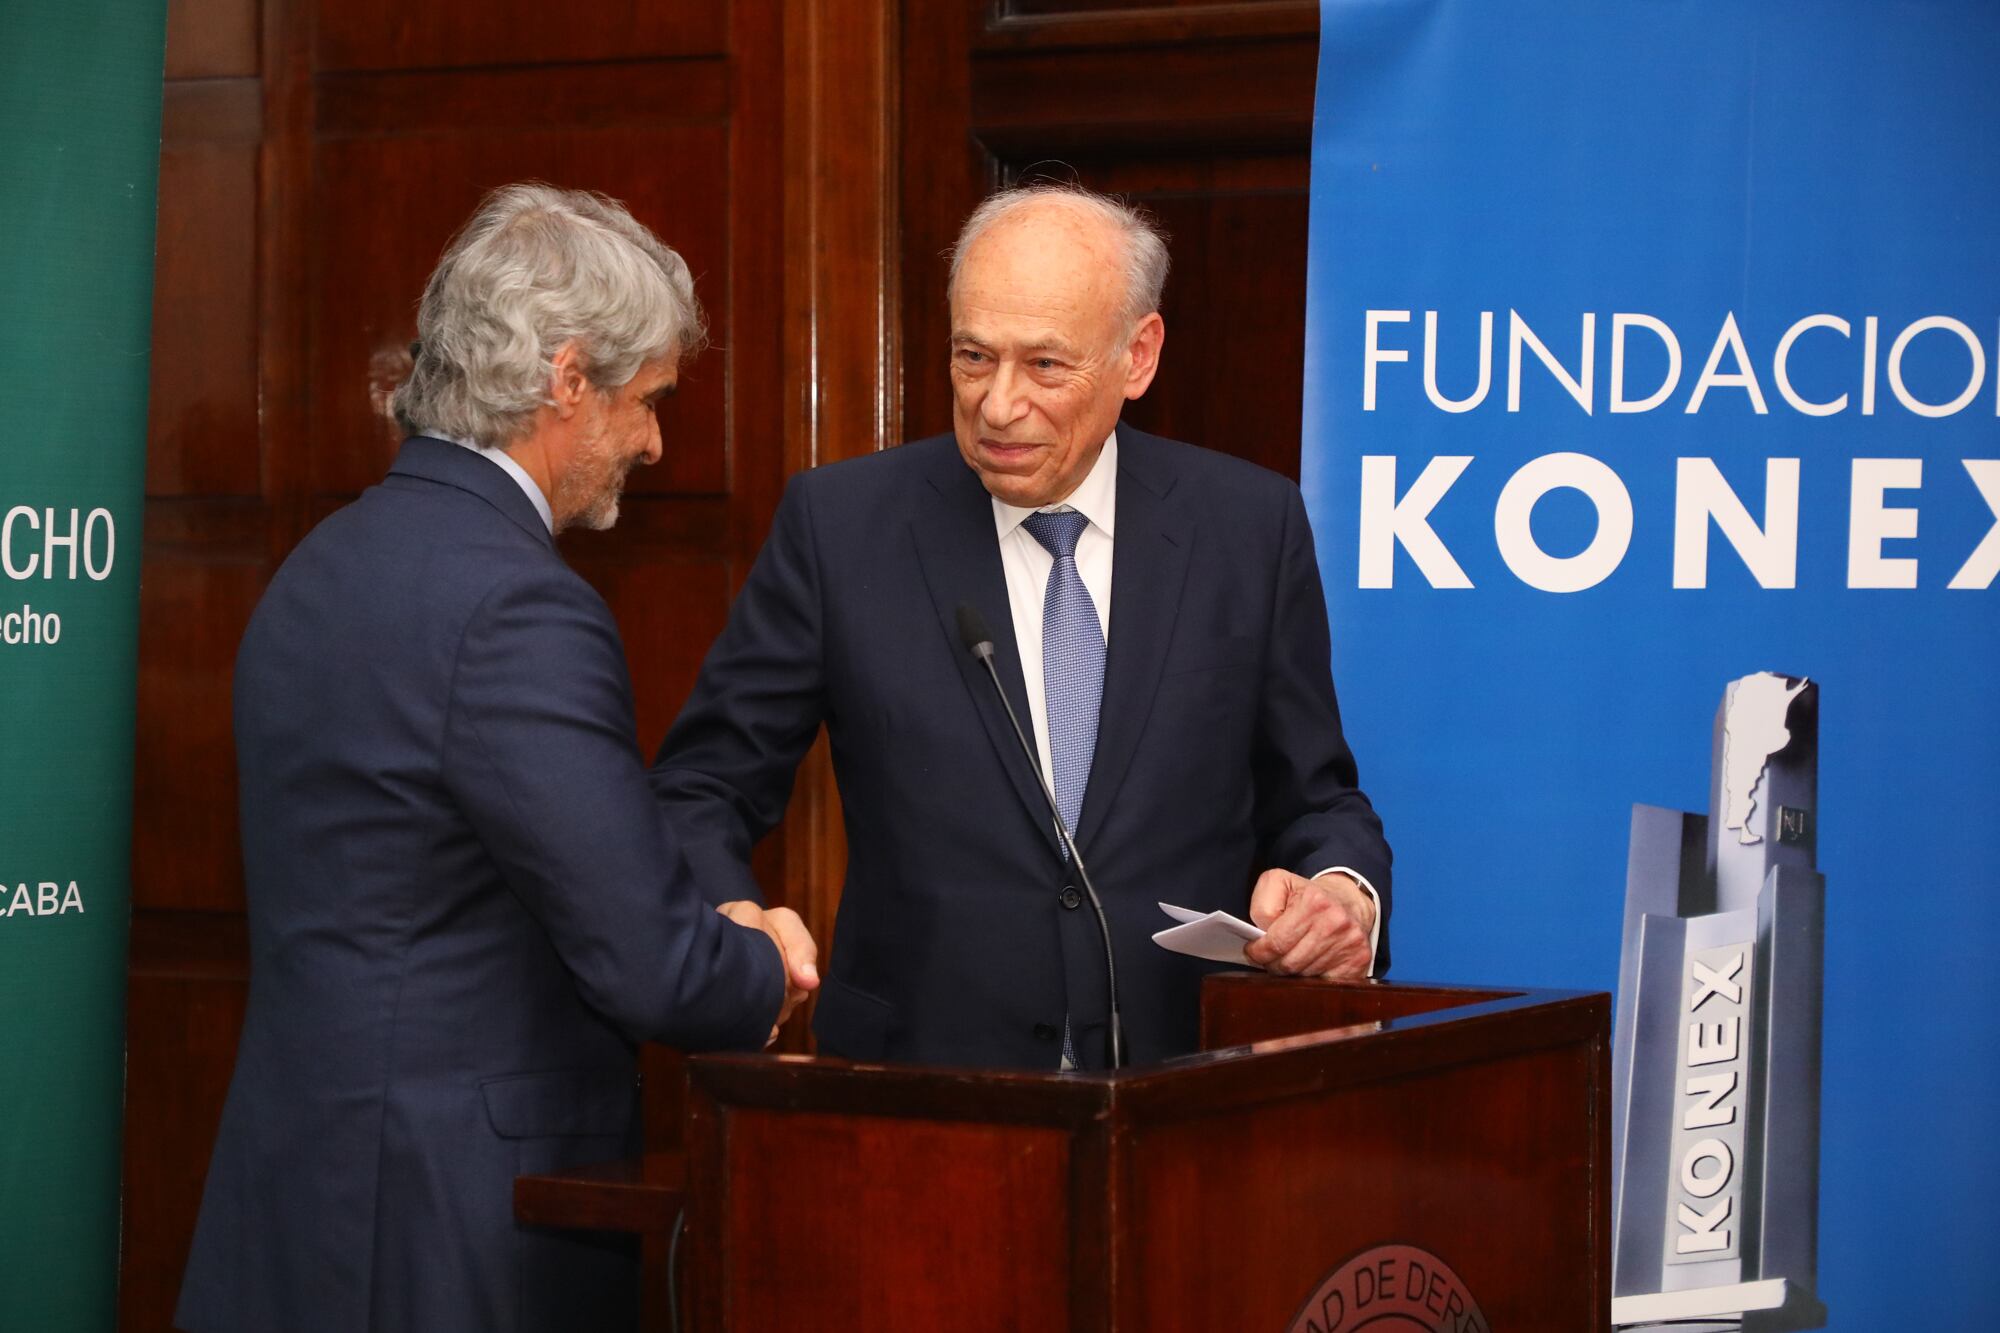 El decano Vergara saluda al presidente de la Fundación Konex. El Dr. Luis Ovsejevich subrayó la importancia de apoyar la educación como una herramienta fundamental para el desarrollo del país y destacó los beneficios de un vínculo inteligente entre el ámbito privado y la gestión pública 